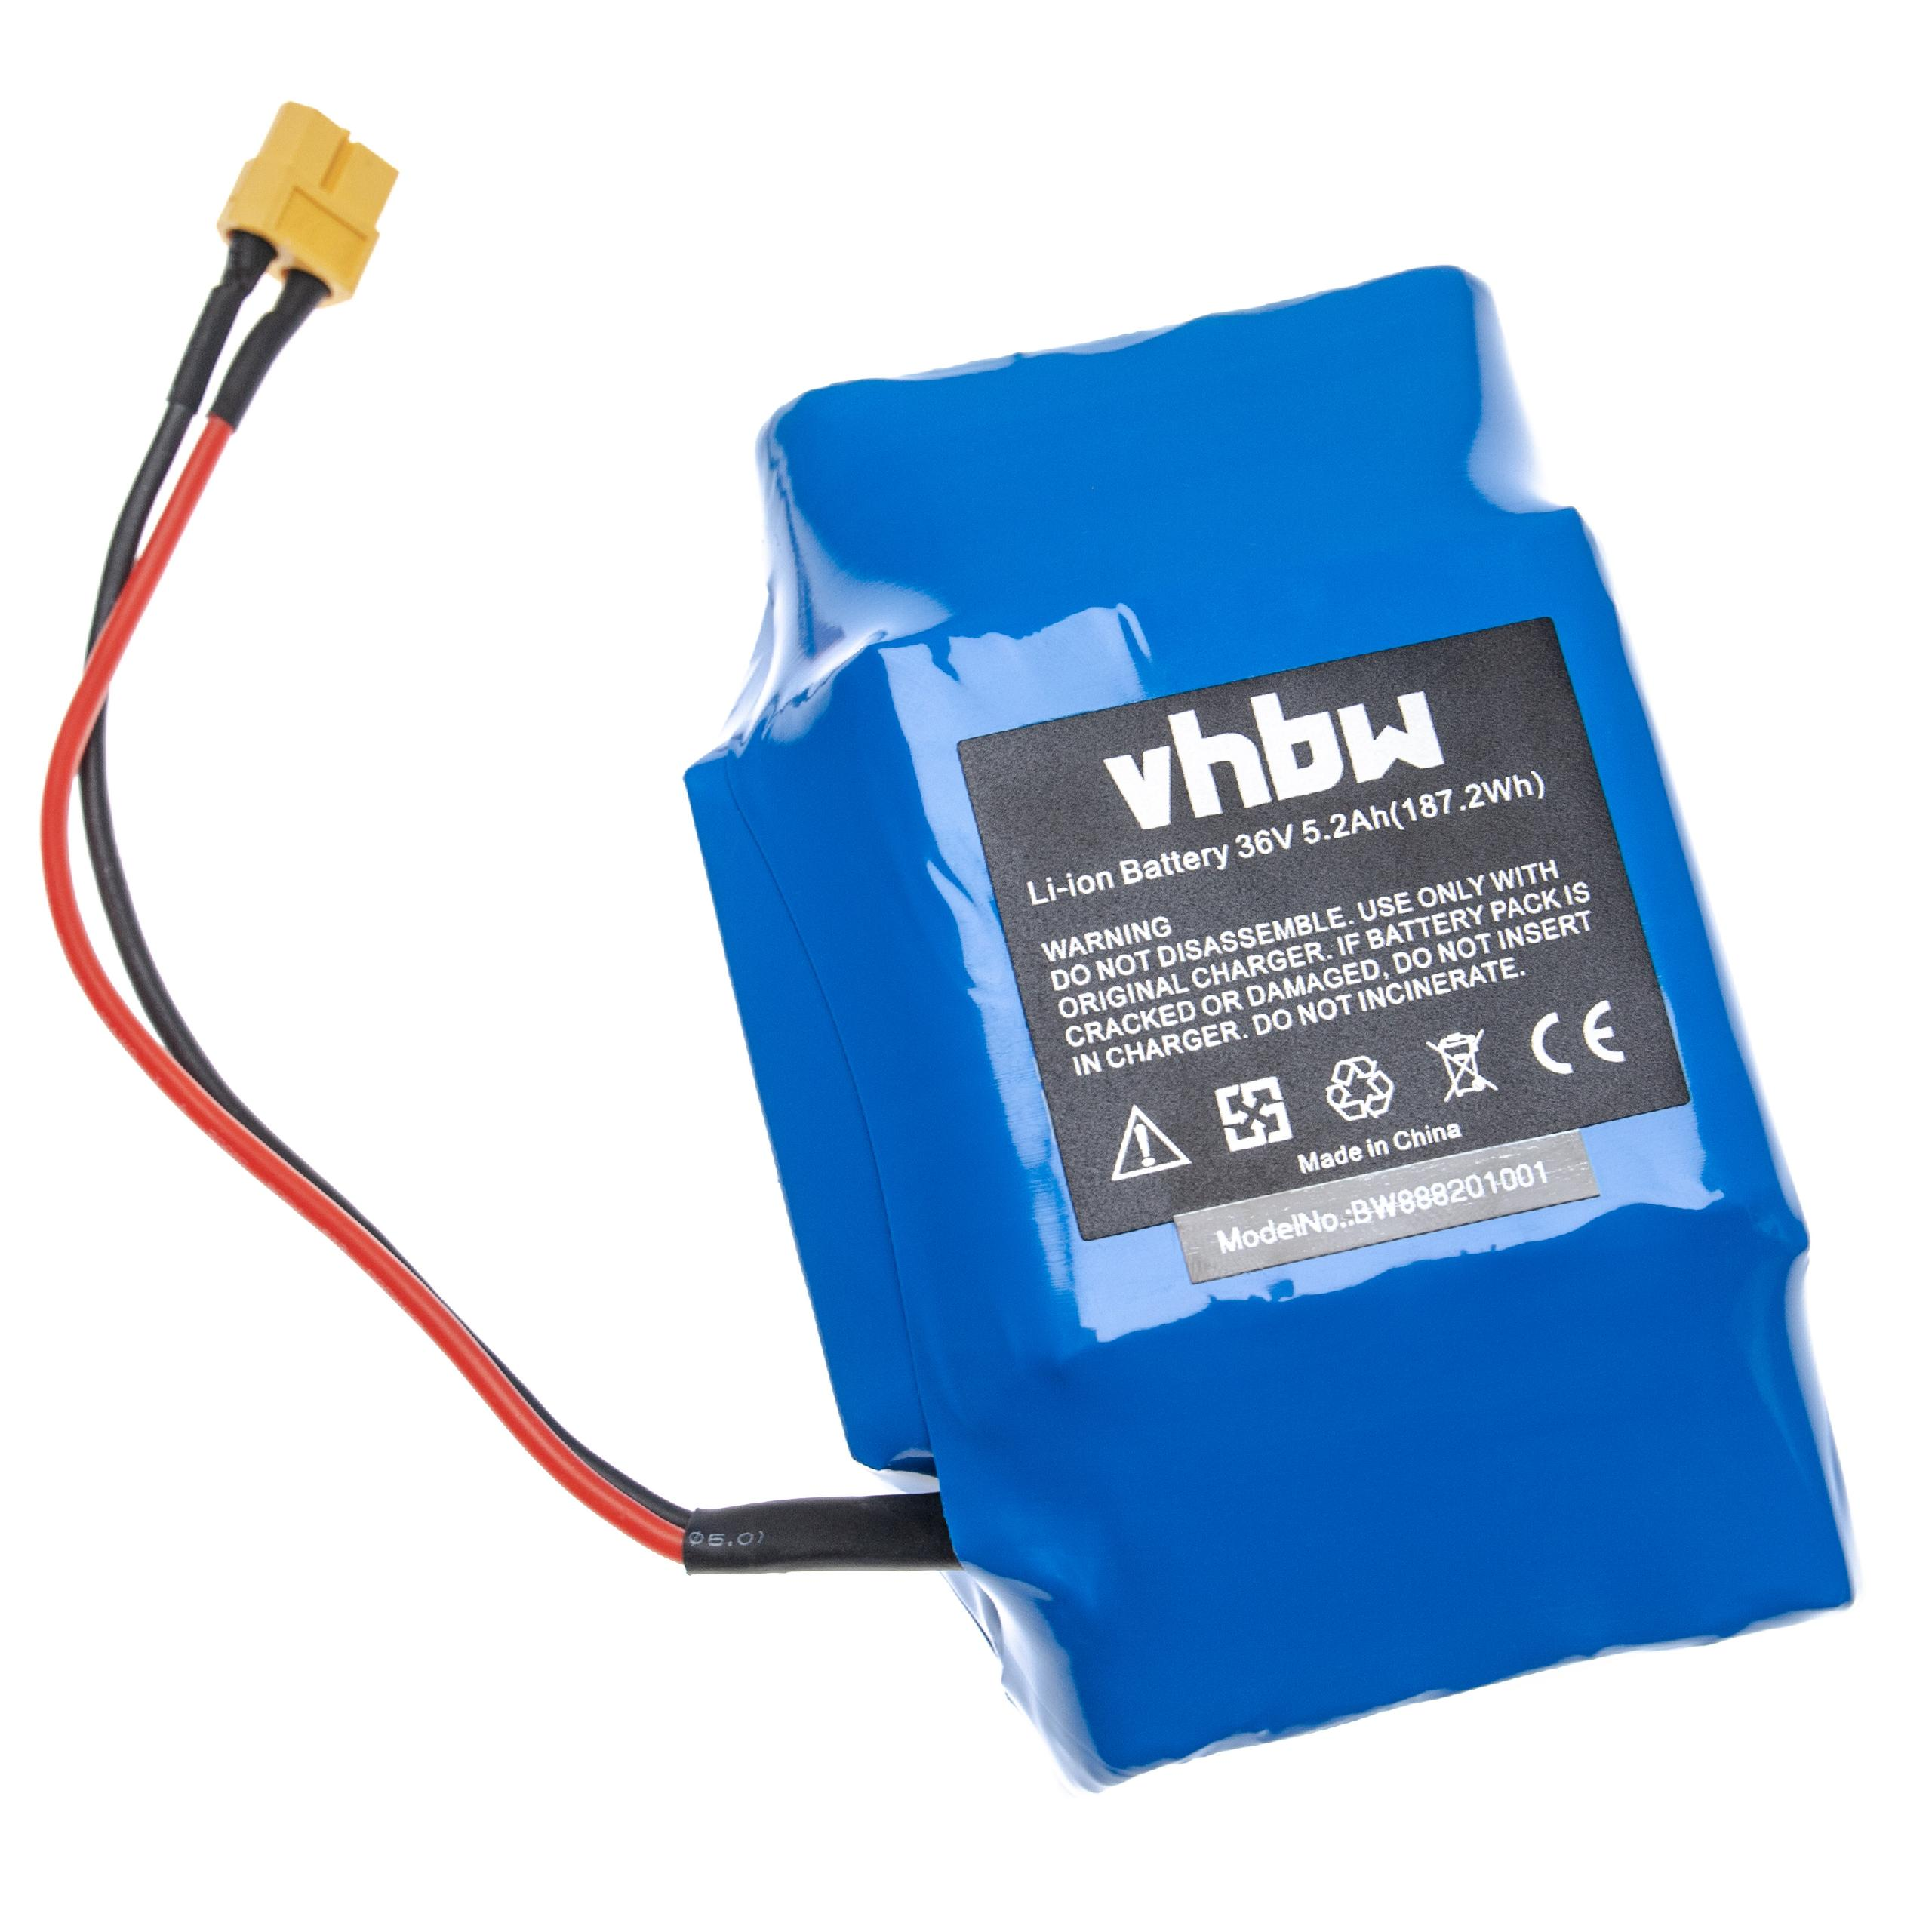 VHBW kompatibel mit Bluewheel HX600 5200 Li-Ion Akku Hoverboard, 